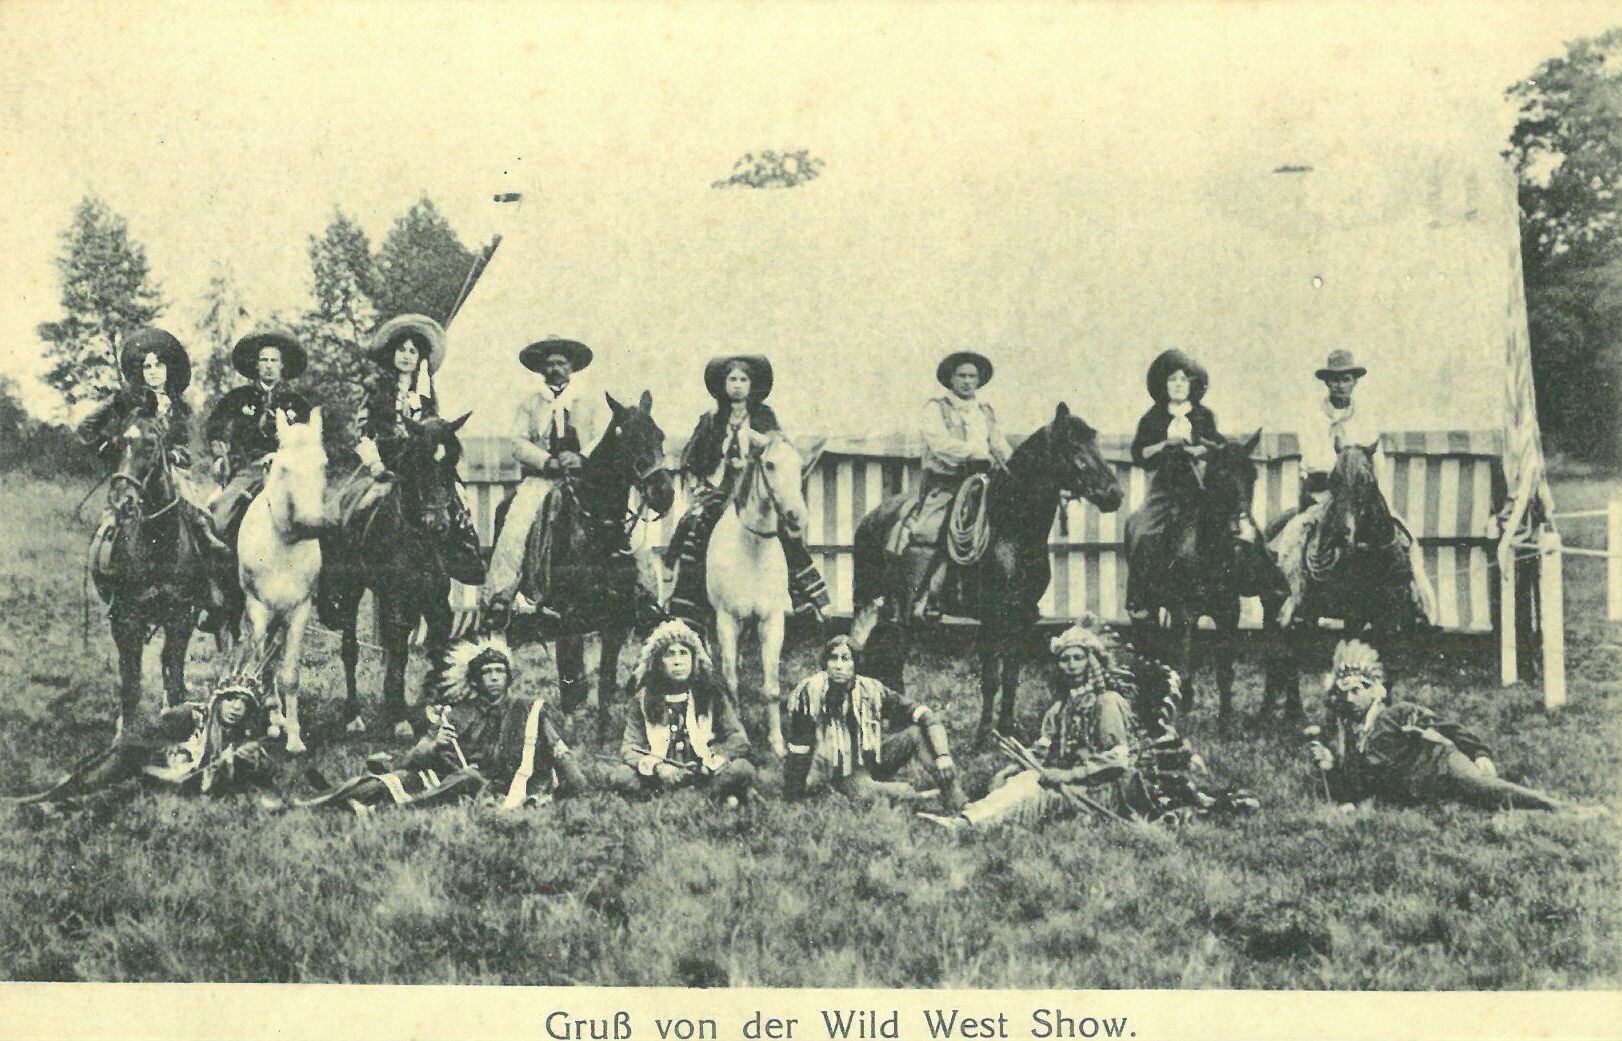 Wild West Show der Deer Family; Gruppenbild Cowboy-Darsteller zu Pferd und Darsteller Indigene sitzend (Karl-May-Museum gGmbH RR-R)